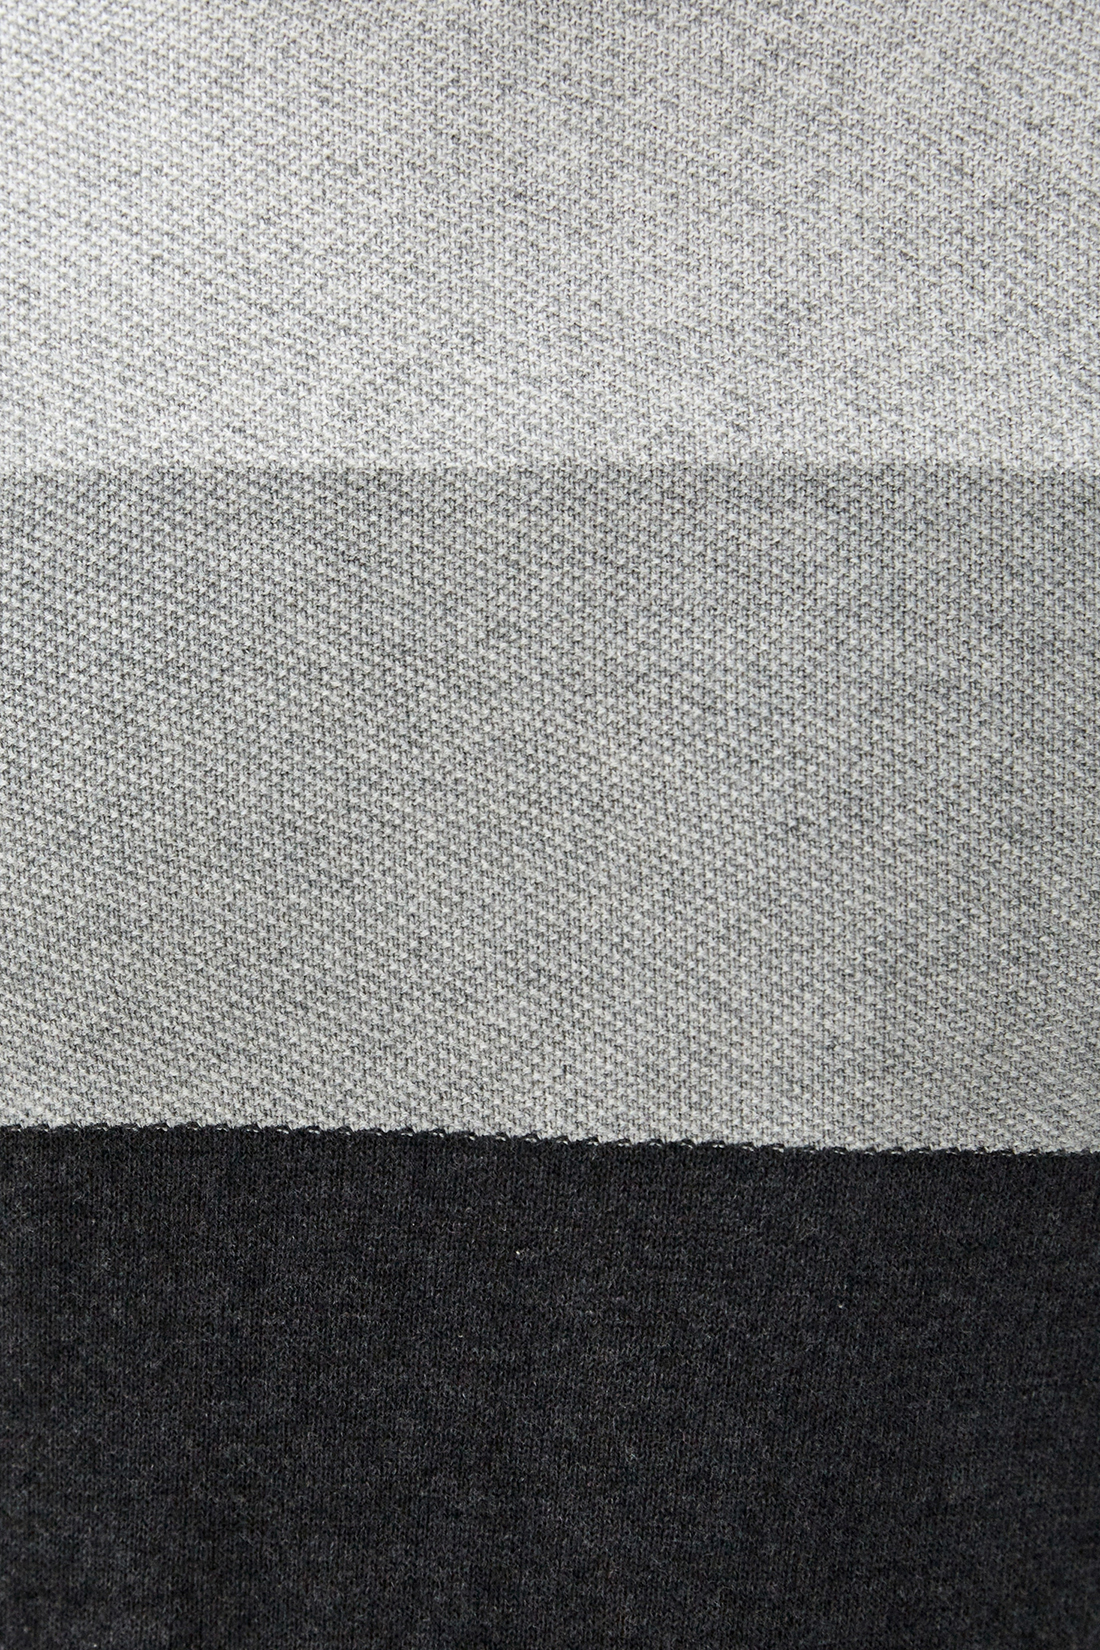 Джемпер в стиле color-block (арт. baon B630540), размер L, цвет marengo melange#серый Джемпер в стиле color-block (арт. baon B630540) - фото 3